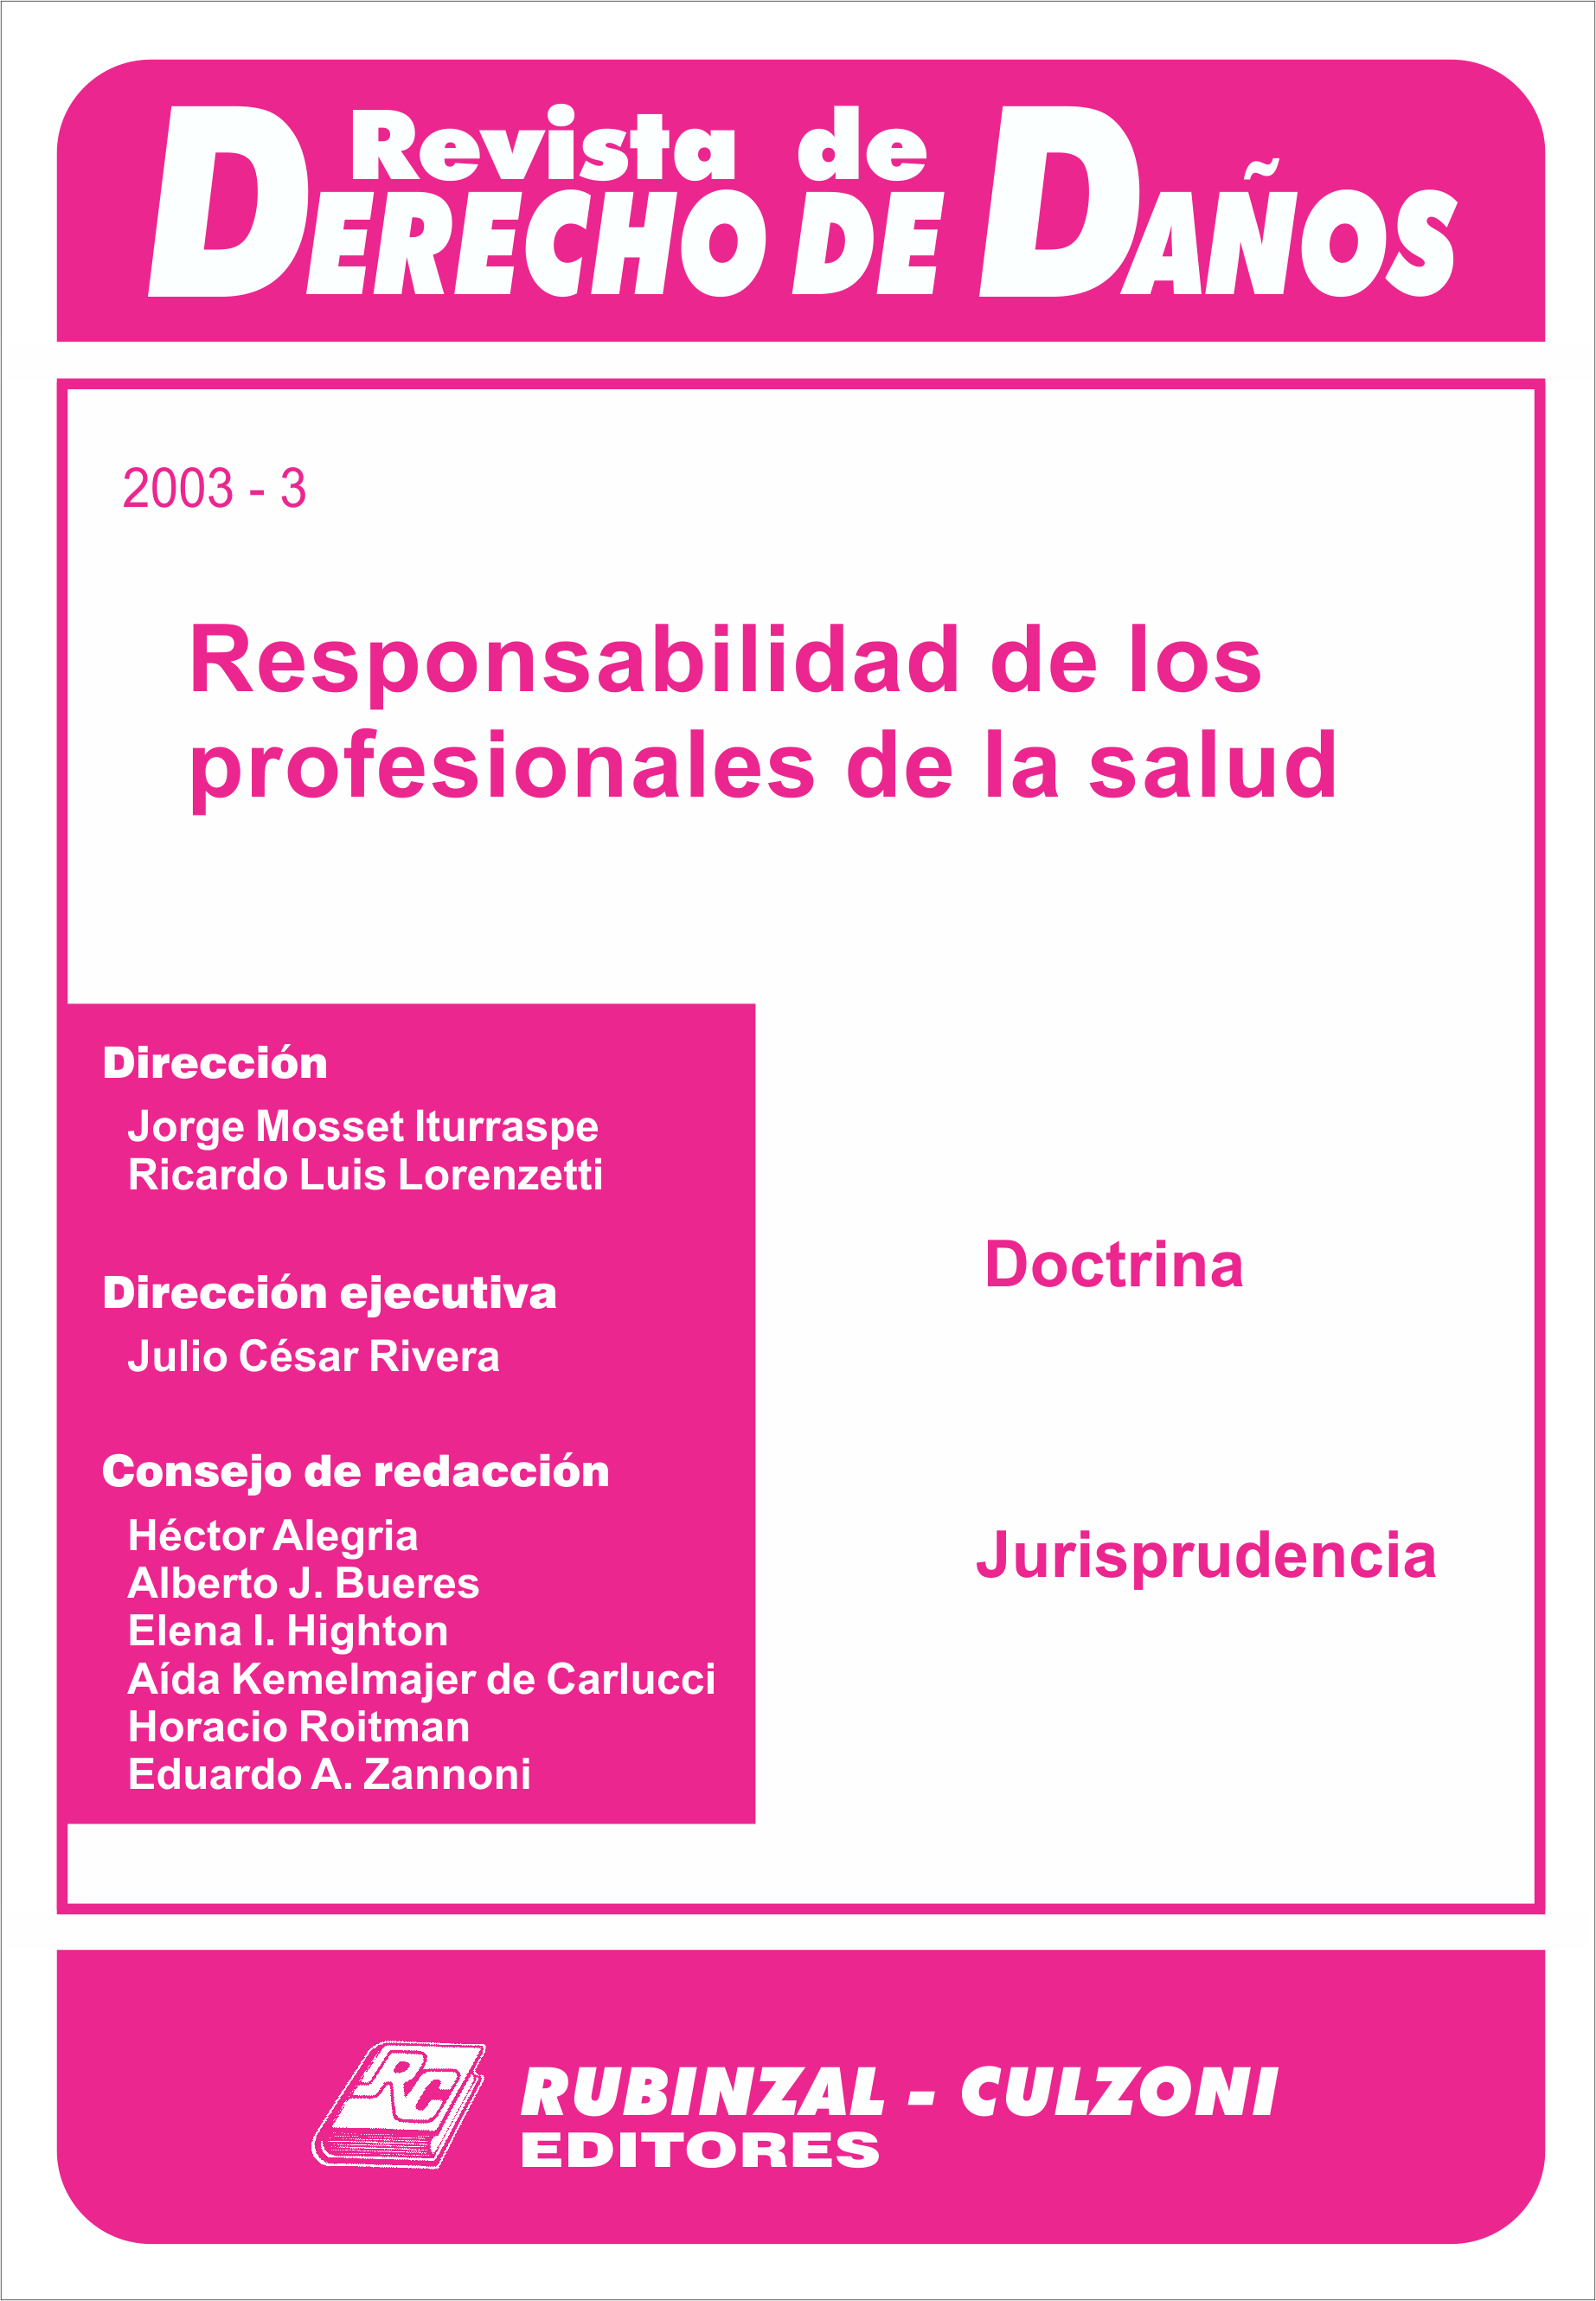 Revista de Derecho de Daños - Responsabilidad de los profesionales de la salud.